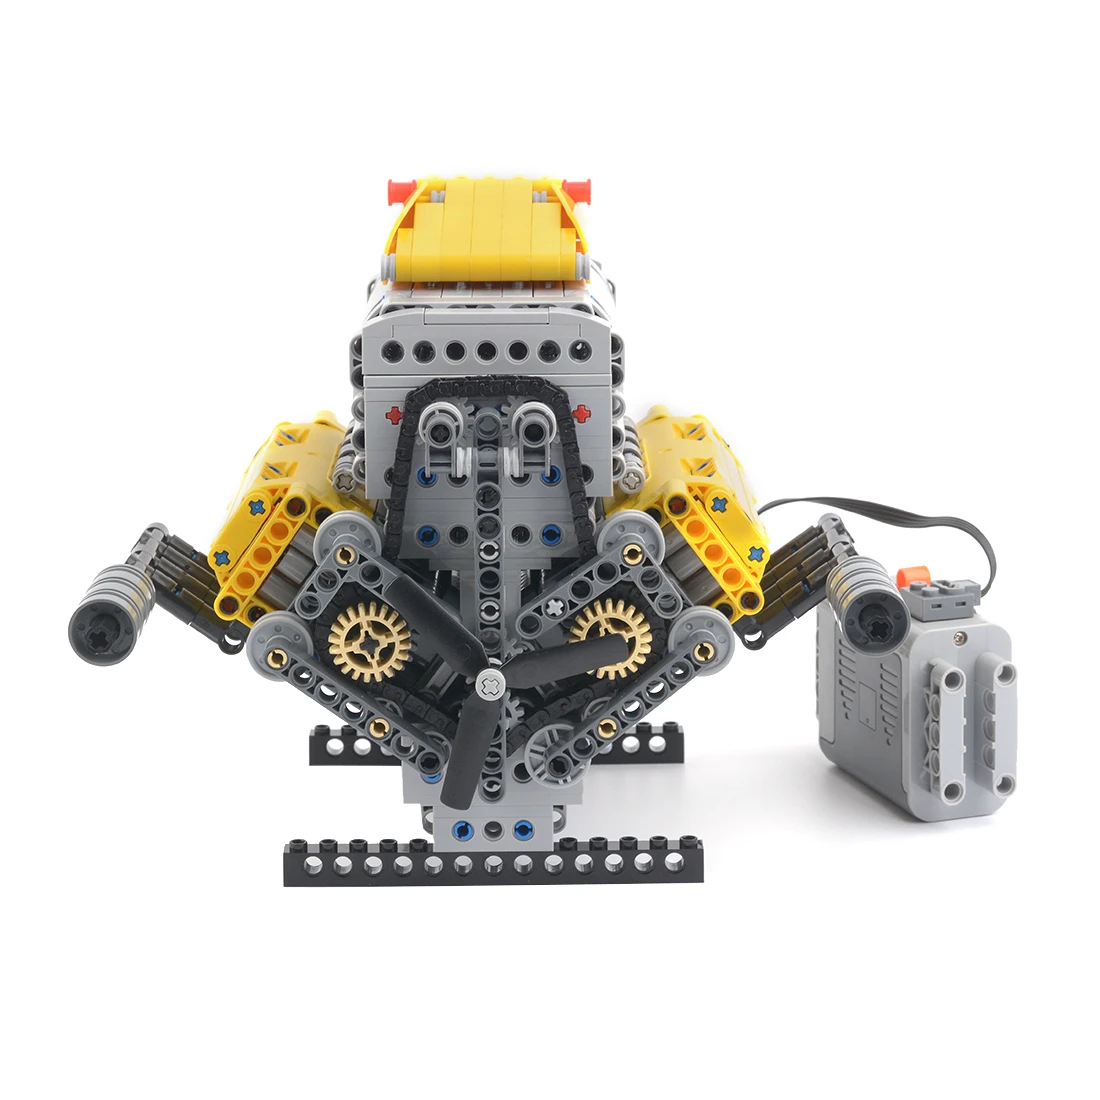 Eerder Wetenschap jongen 945Pcs MOC 60662 V8 Motor Bricks Model Moc Dynamische Display Speelgoed  (Geautoriseerde En Ontworpen Door Bricktec Ontwerpen) voor Kinderen  Speelgoed|Blokken| - AliExpress